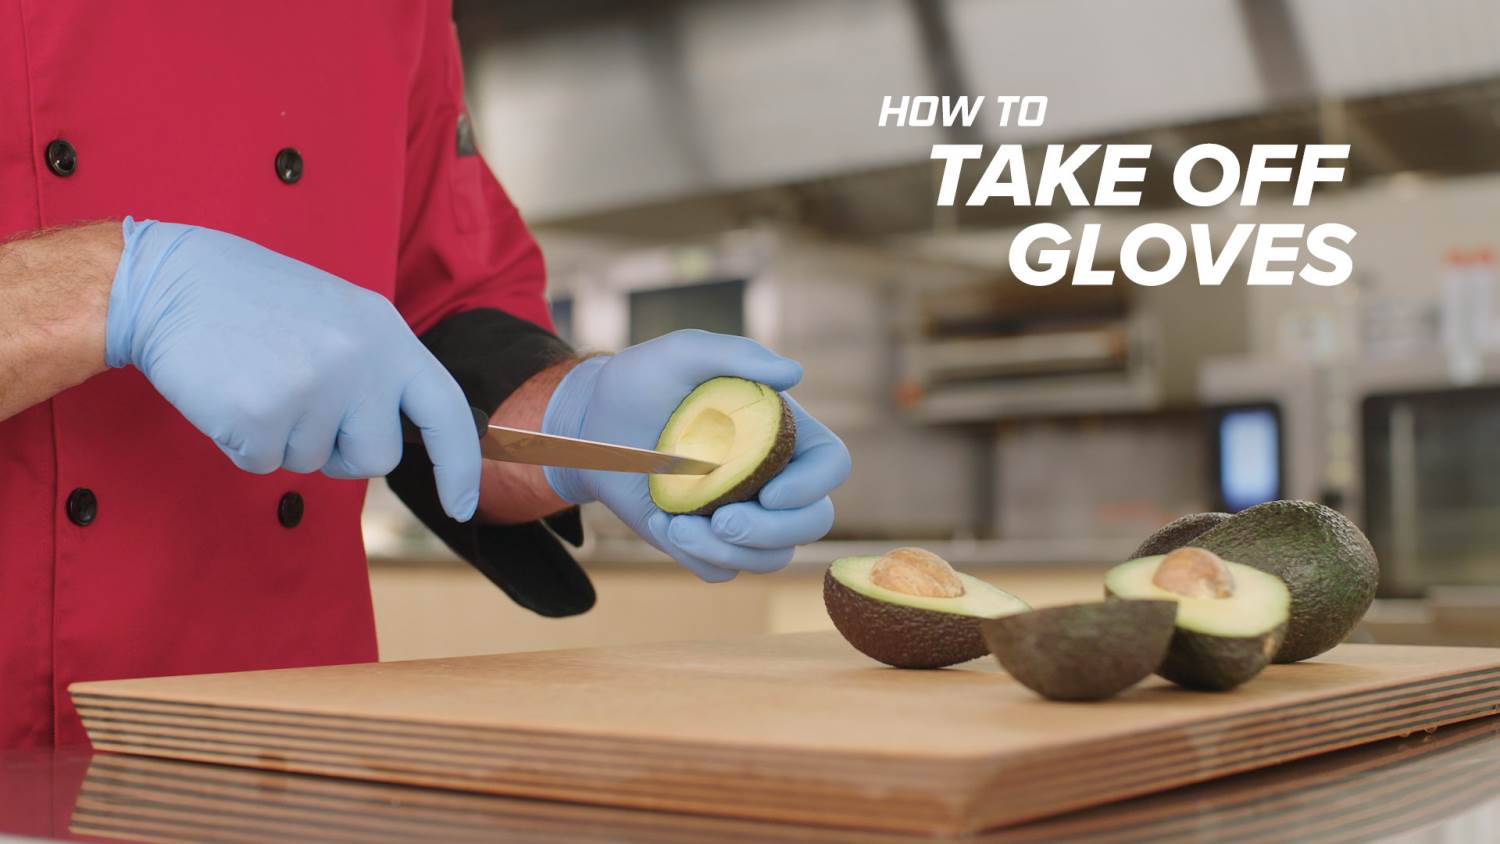 Găng tay cao su cung cấp một giải pháp tiện dụng để duy trì tiêu chuẩn vệ sinh trong nhà bếp của bạn